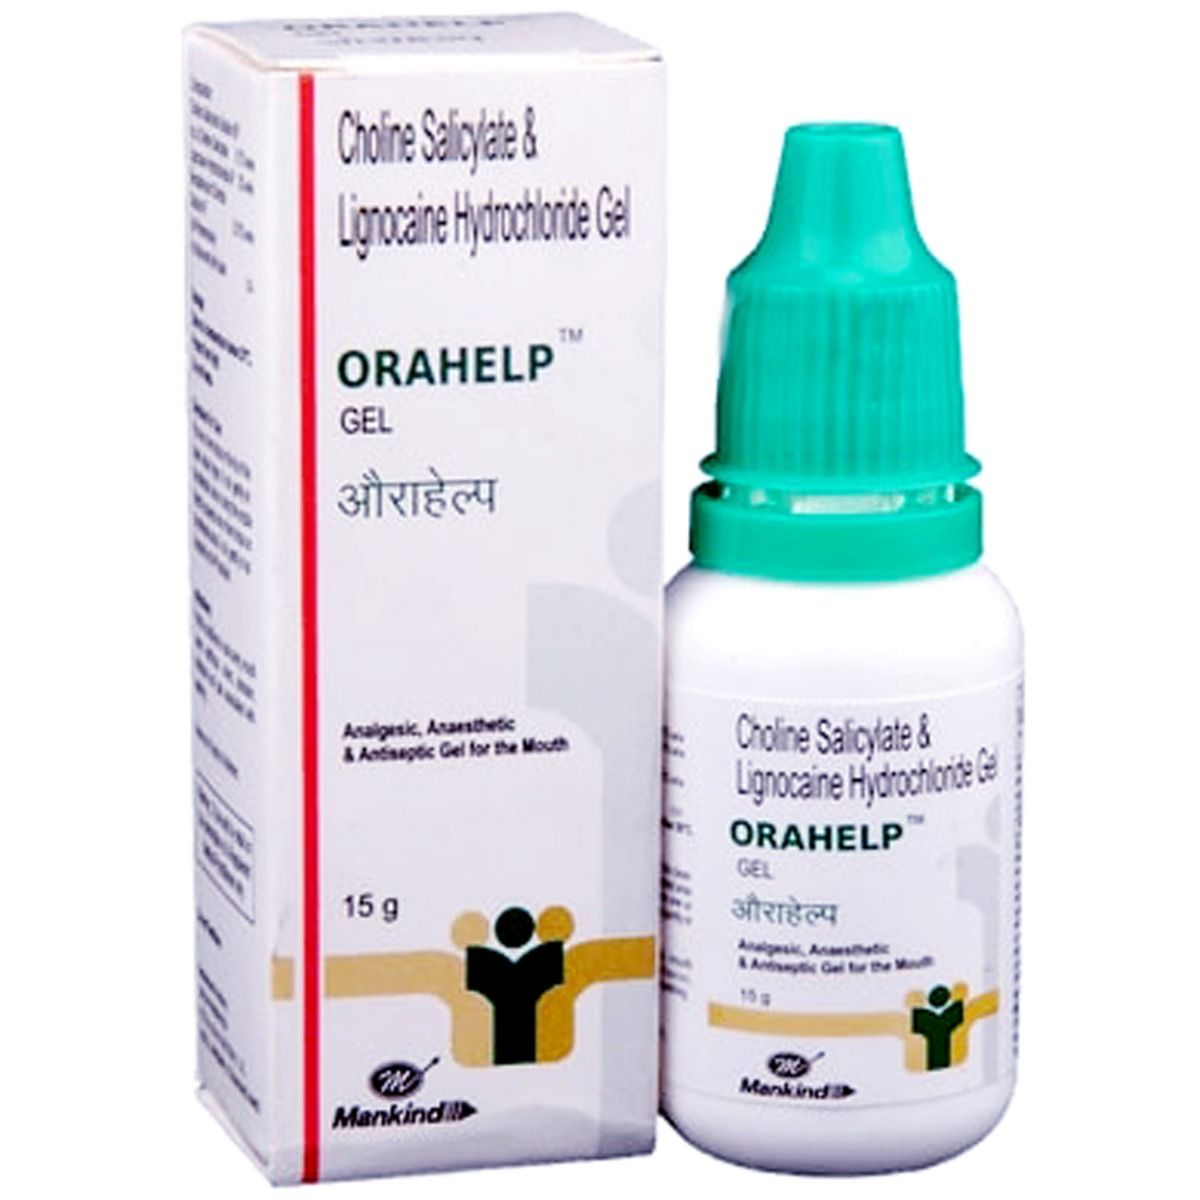 Buy Orahelp Gel 15 gm Online